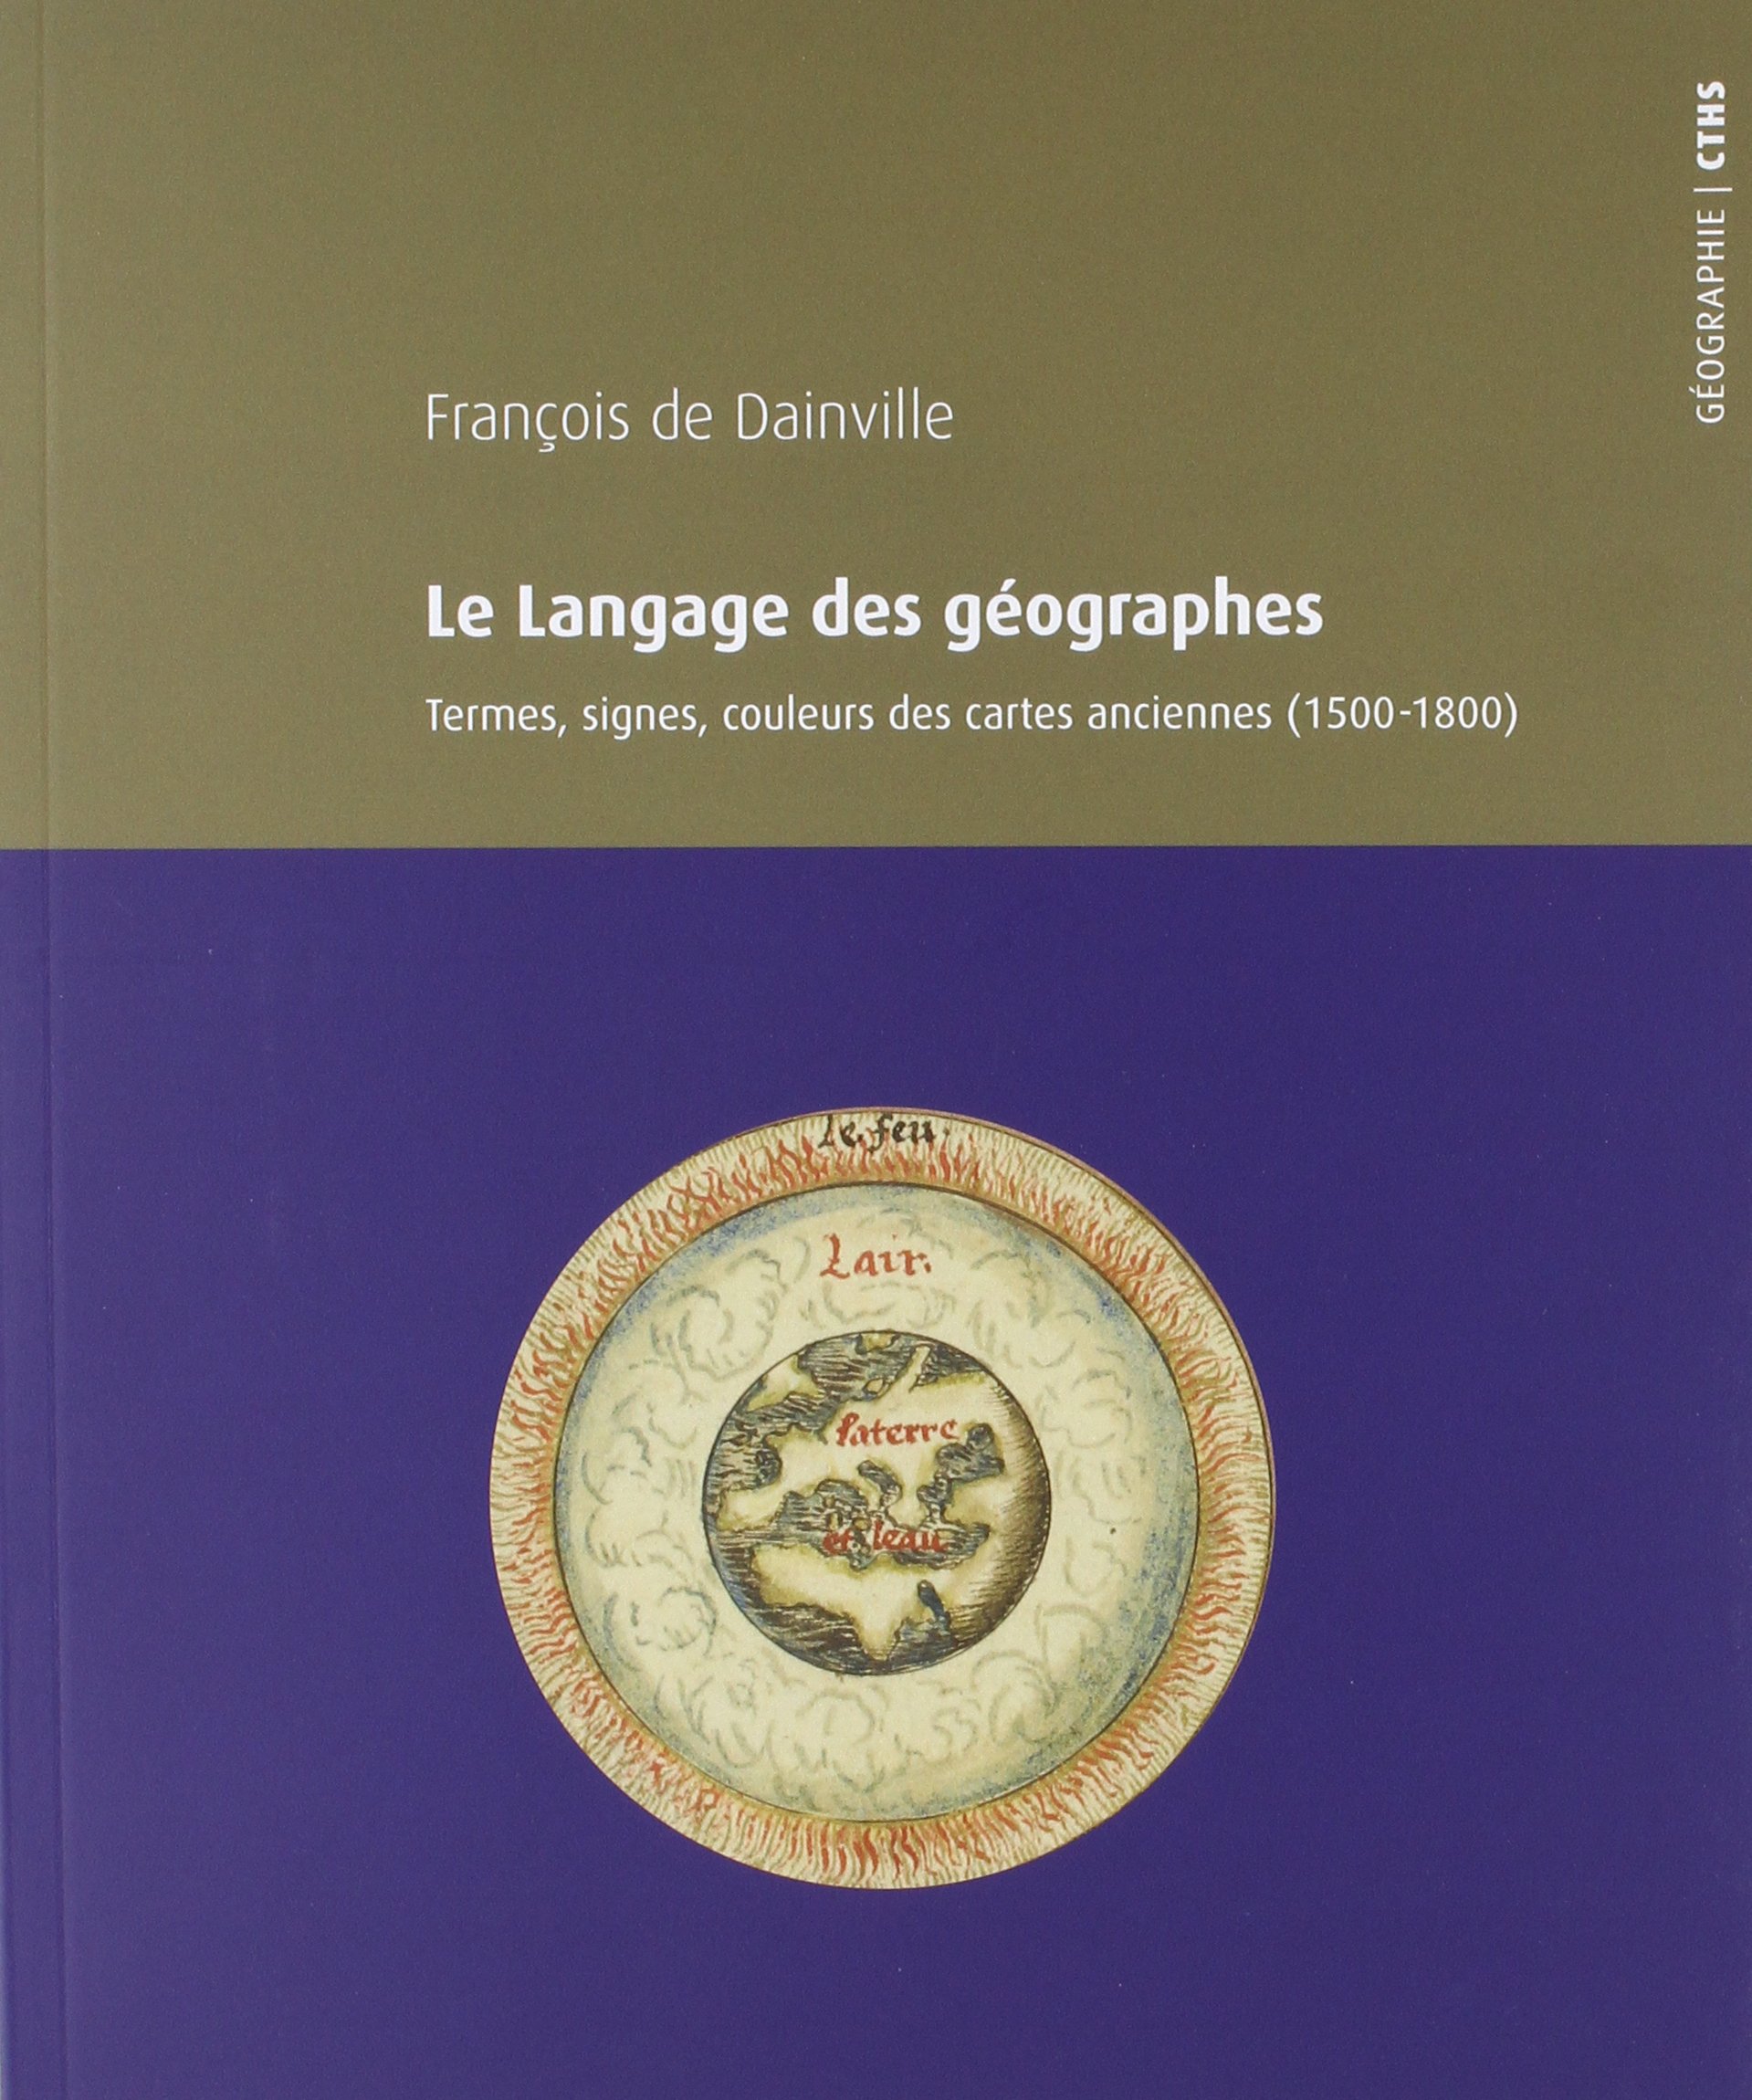 Le langage des géographes. Termes, signes et couleurs des cartes anciennes (1500-1800), 2018, 300 p.